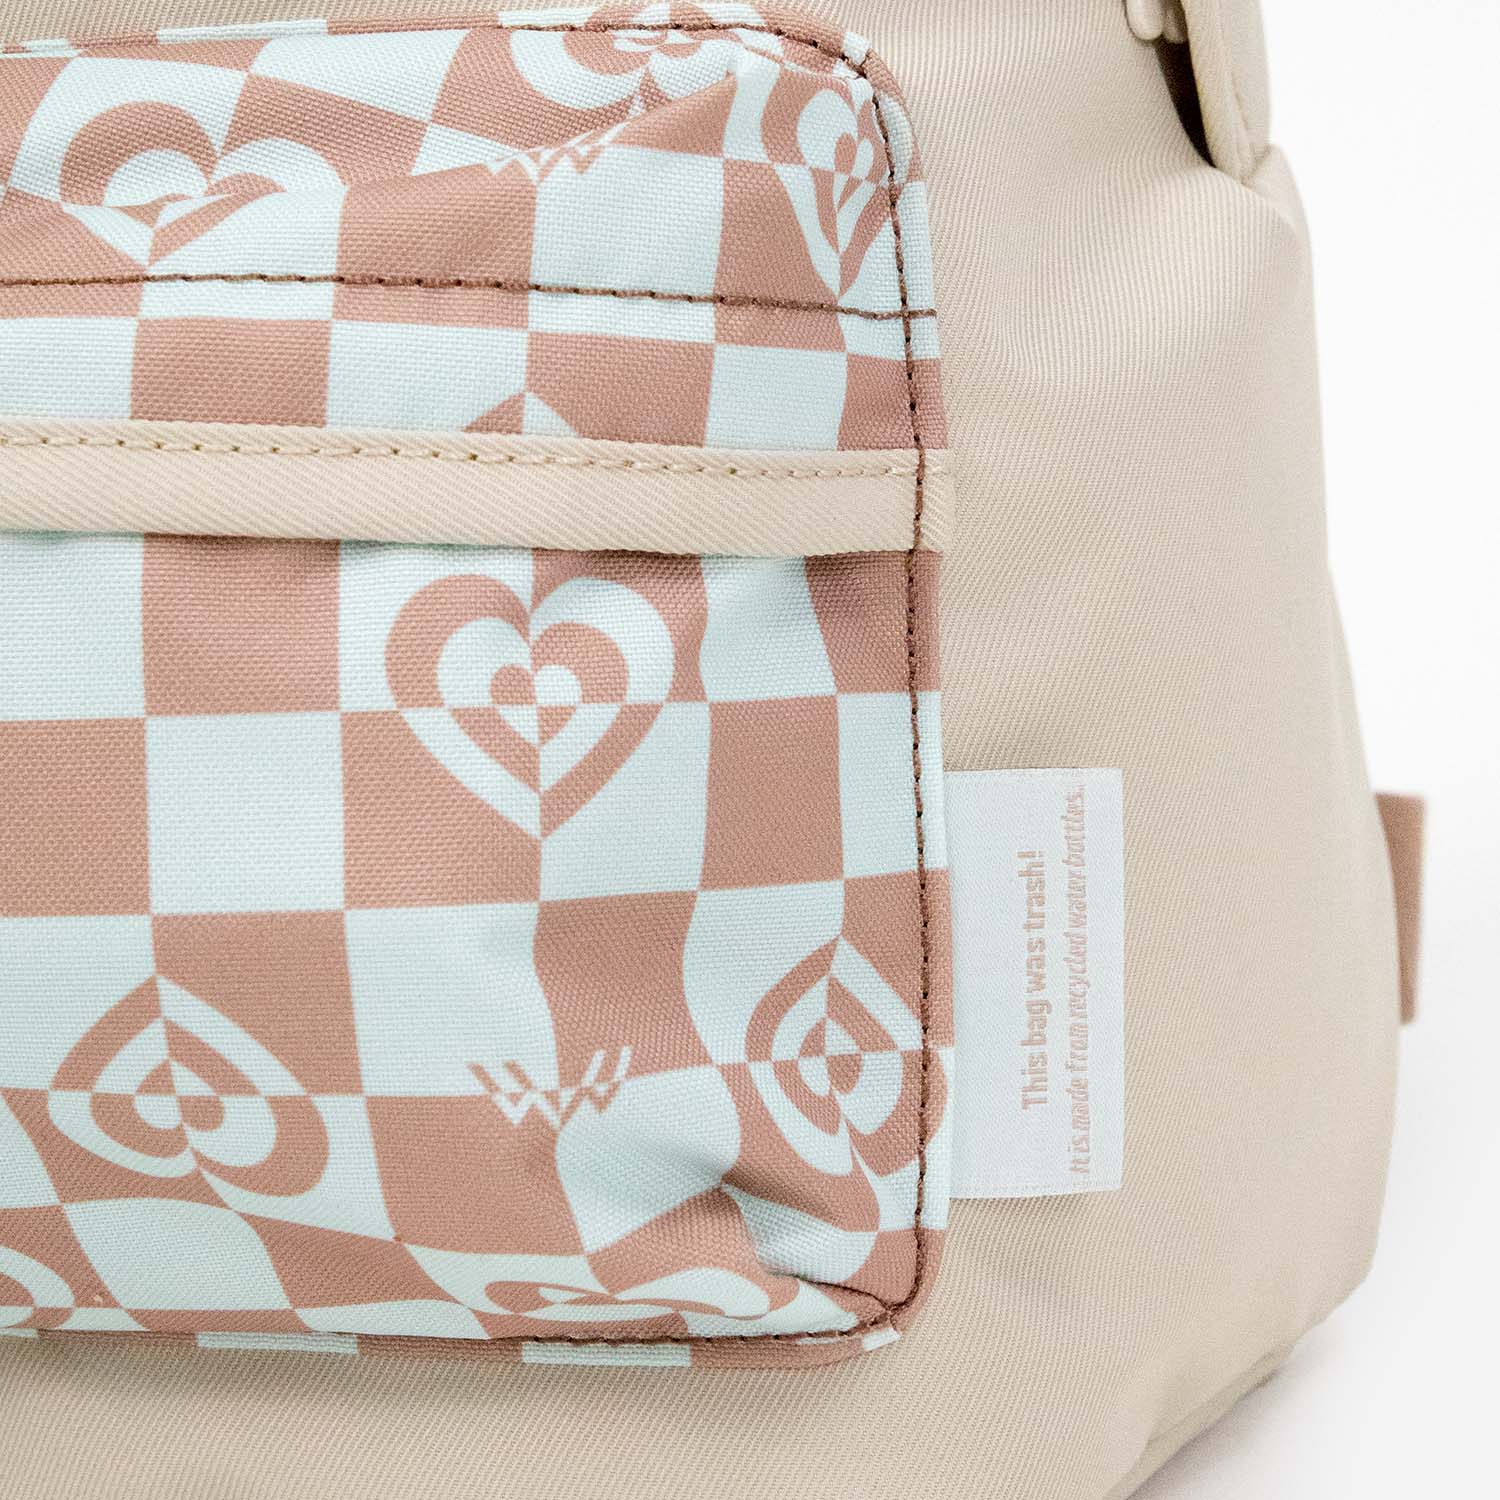 Kaleido Series Plus One Mini Backpack in Mushroom Checked